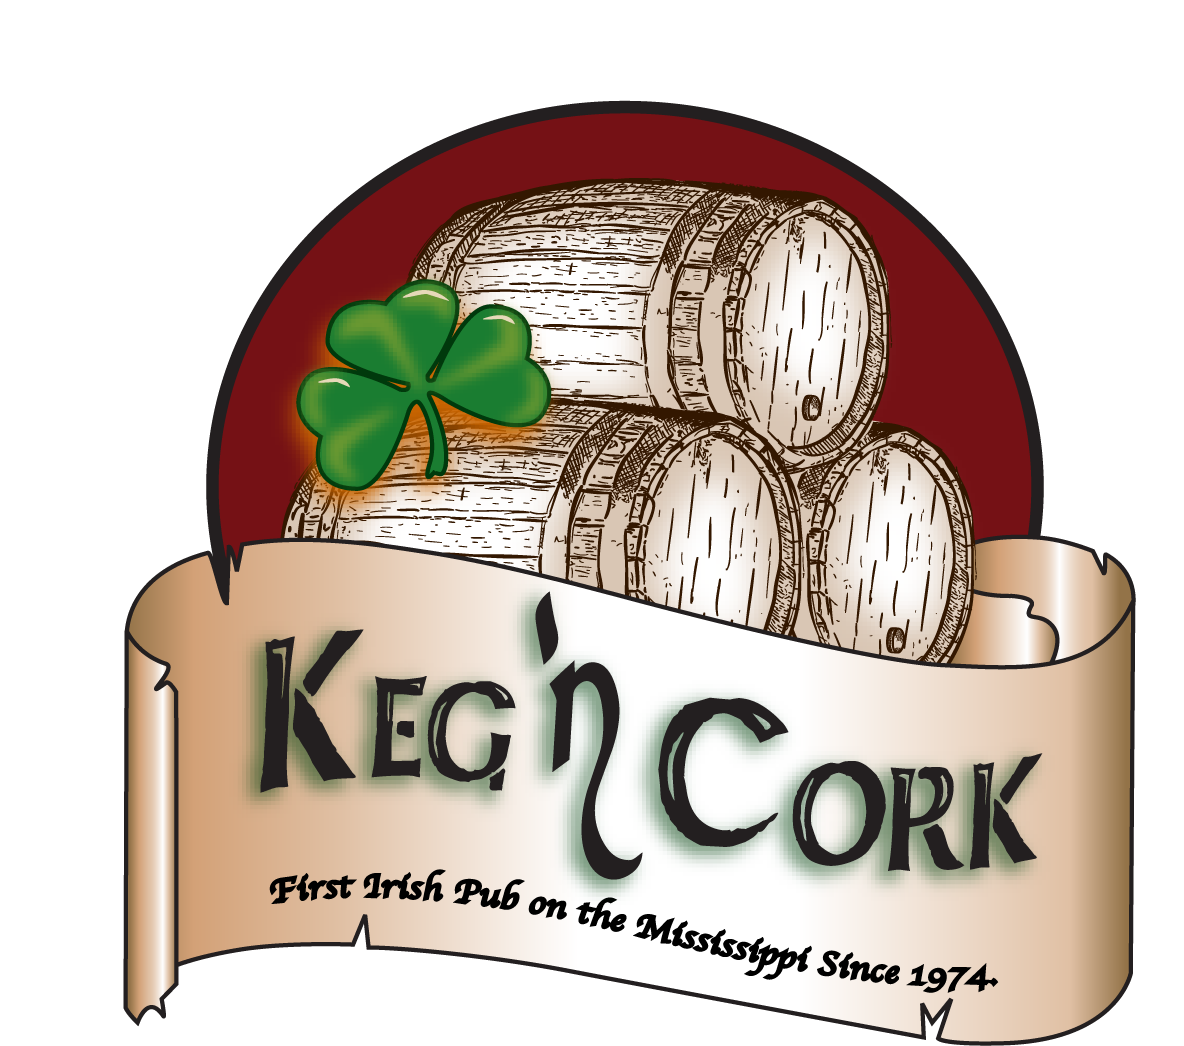 Keg N' Cork